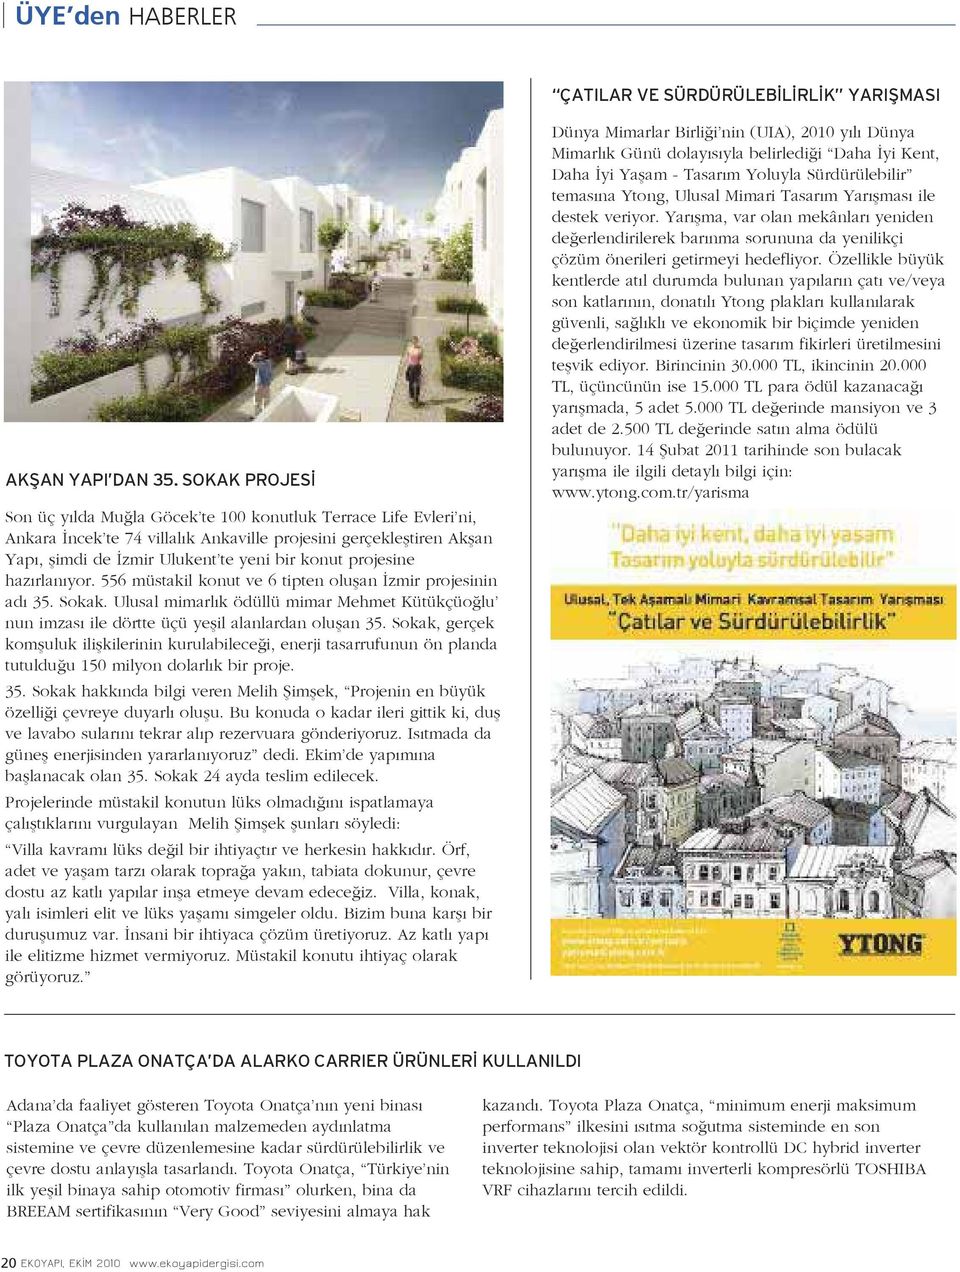 projesine hazırlanıyor. 556 müstakil konut ve 6 tipten oluşan İzmir projesinin adı 35. Sokak. Ulusal mimarlık ödüllü mimar Mehmet Kütükçüoğlu nun imzası ile dörtte üçü yeşil alanlardan oluşan 35.